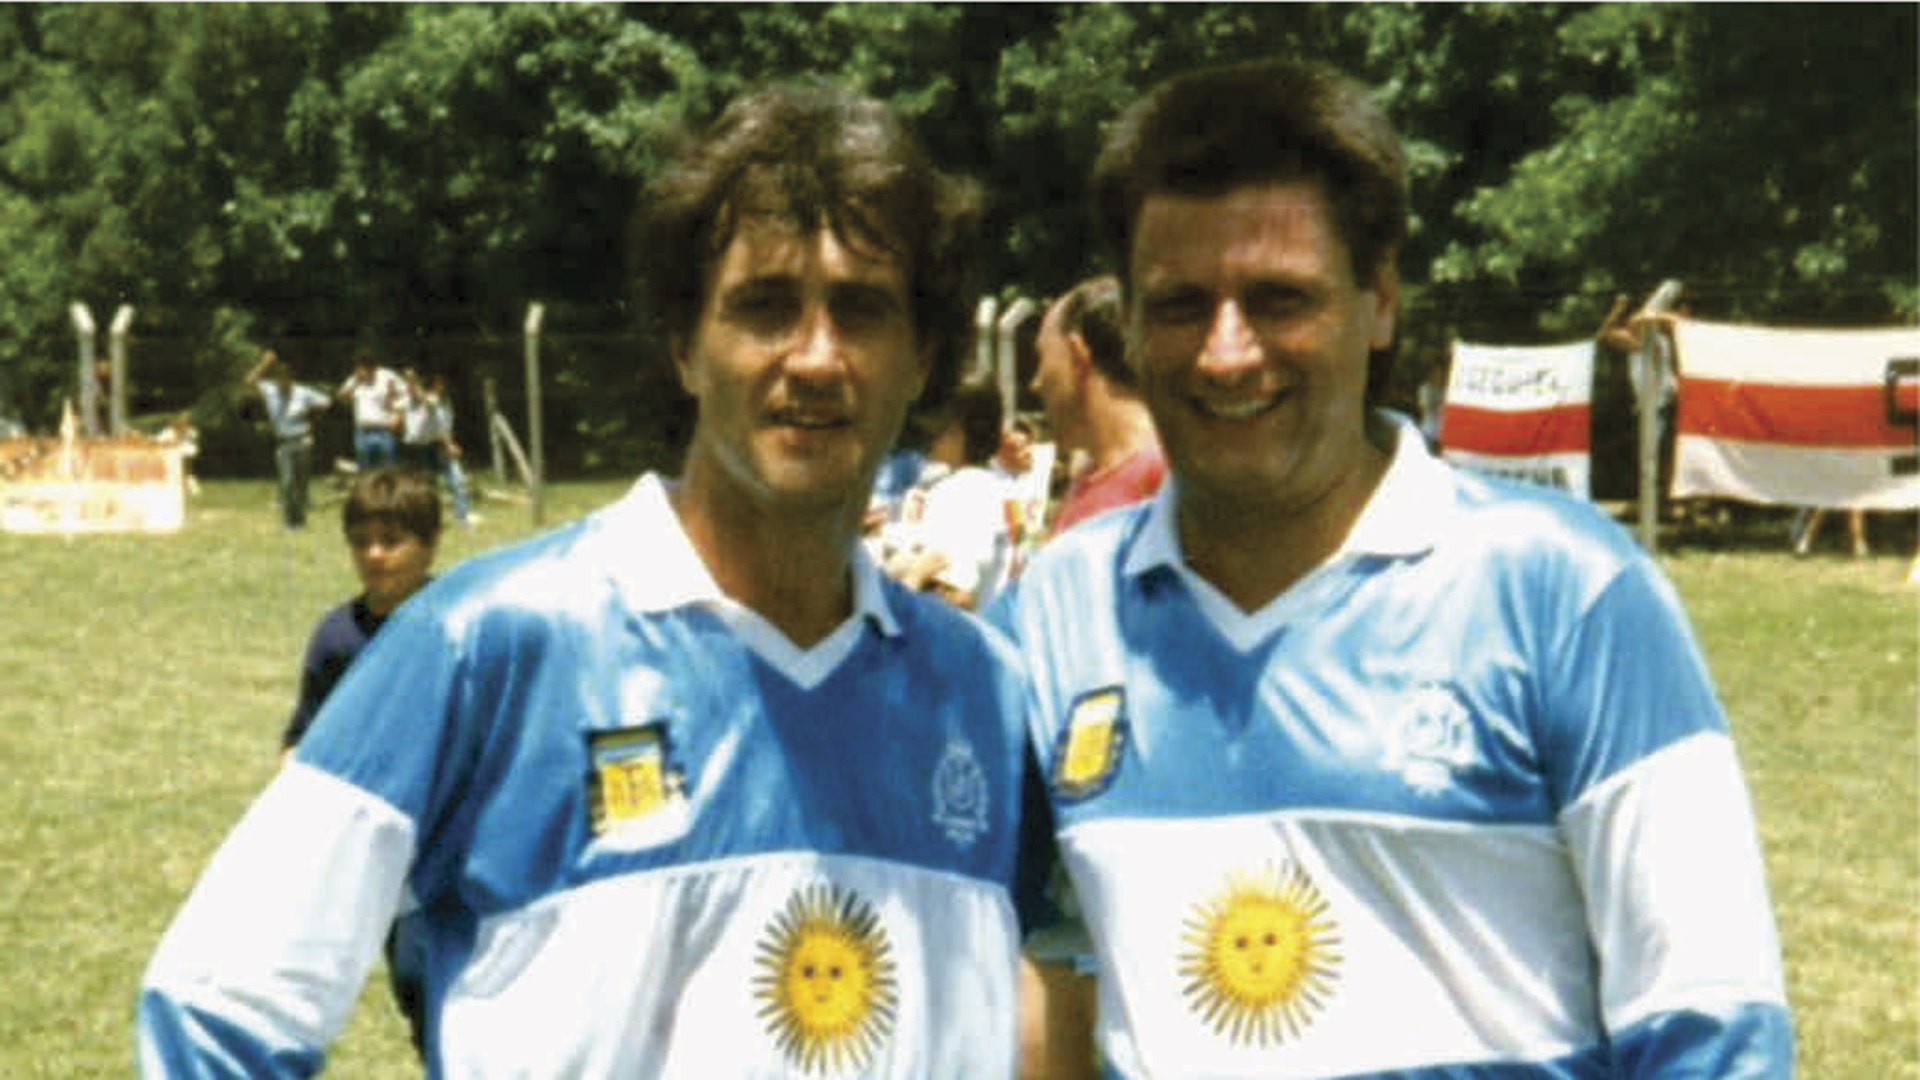 oculta: la camiseta de la Selección con la bandera argentina que había sido aprobada para el Mundial 90 y nunca se usó - Infobae